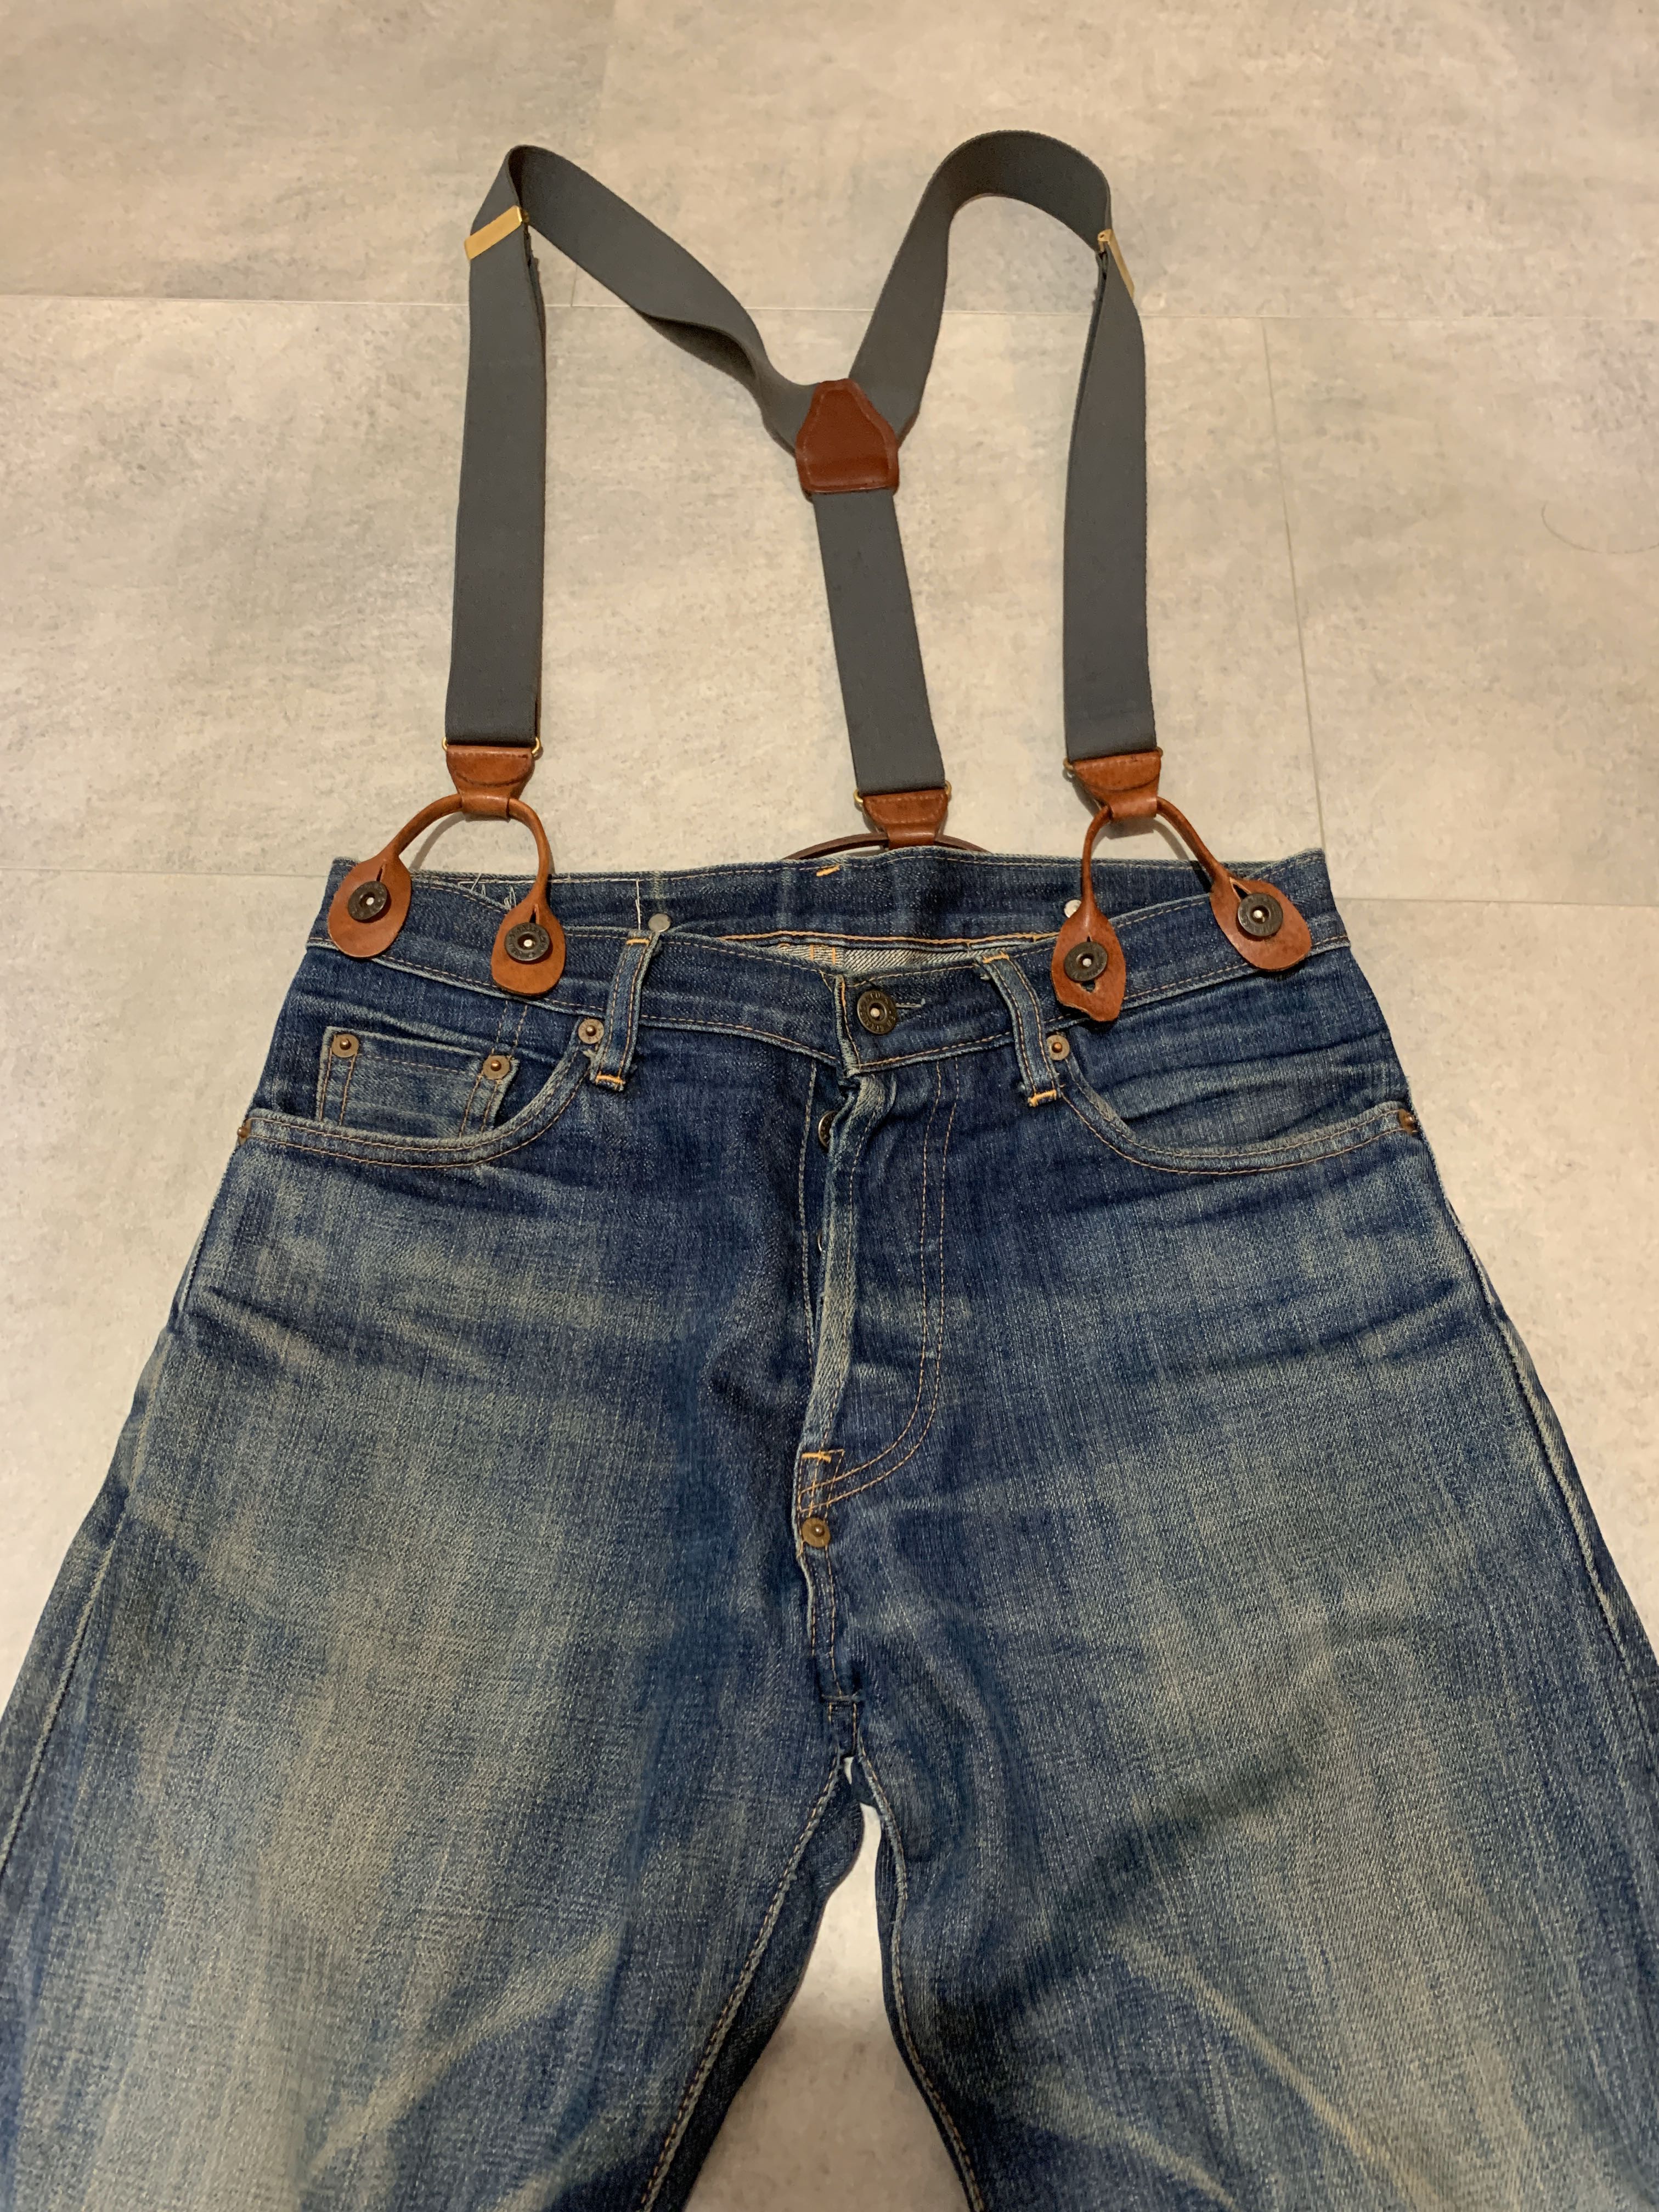 Suspender Jeans 201 Big E LVC 1922 